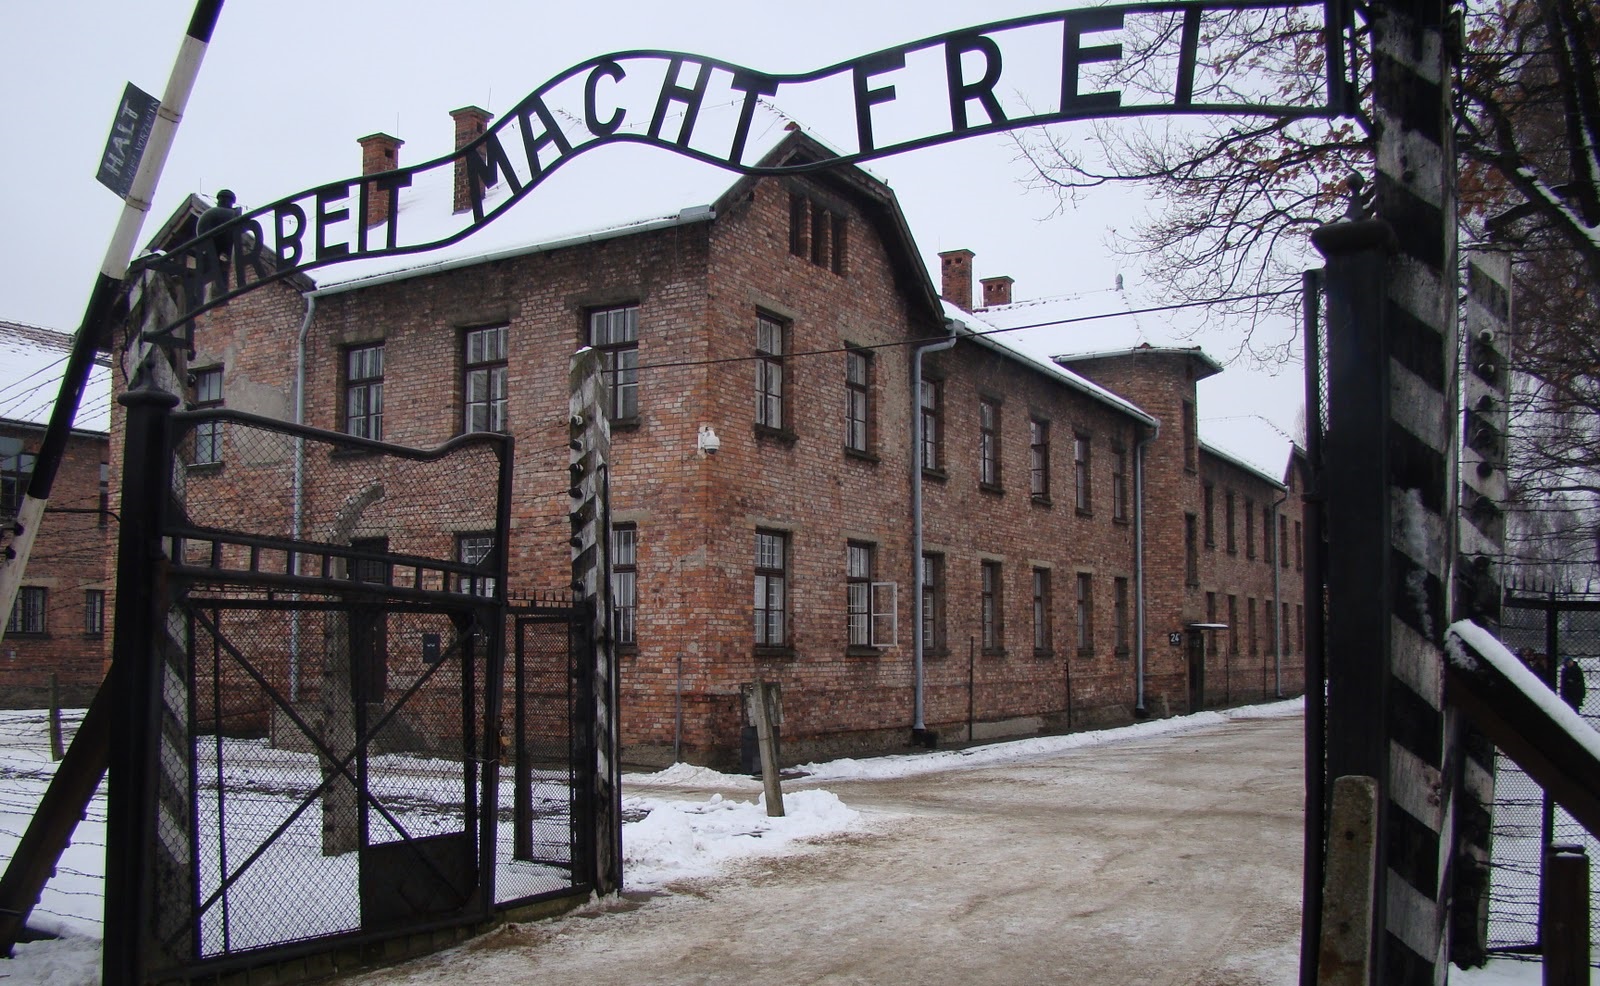 Január 27-e a holokauszt nemzetközi emléknapja, az a nap, amikor a világ szembesült a náci népirtás gyalázatával